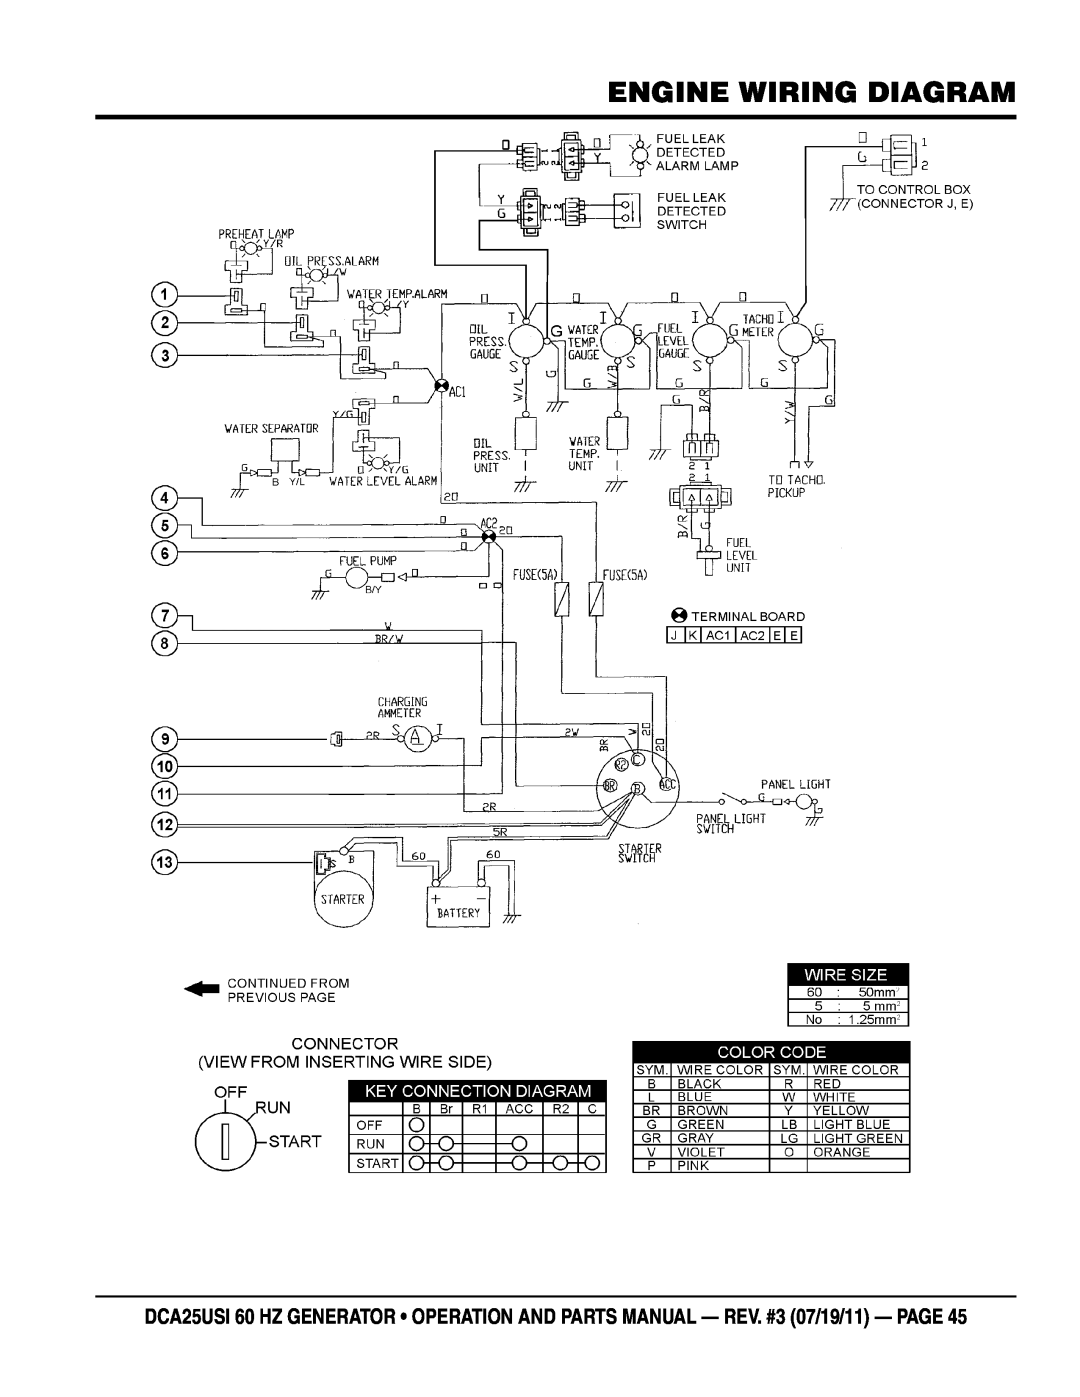 Multiquip DCA25USI manual Engine Wiring Diagram 